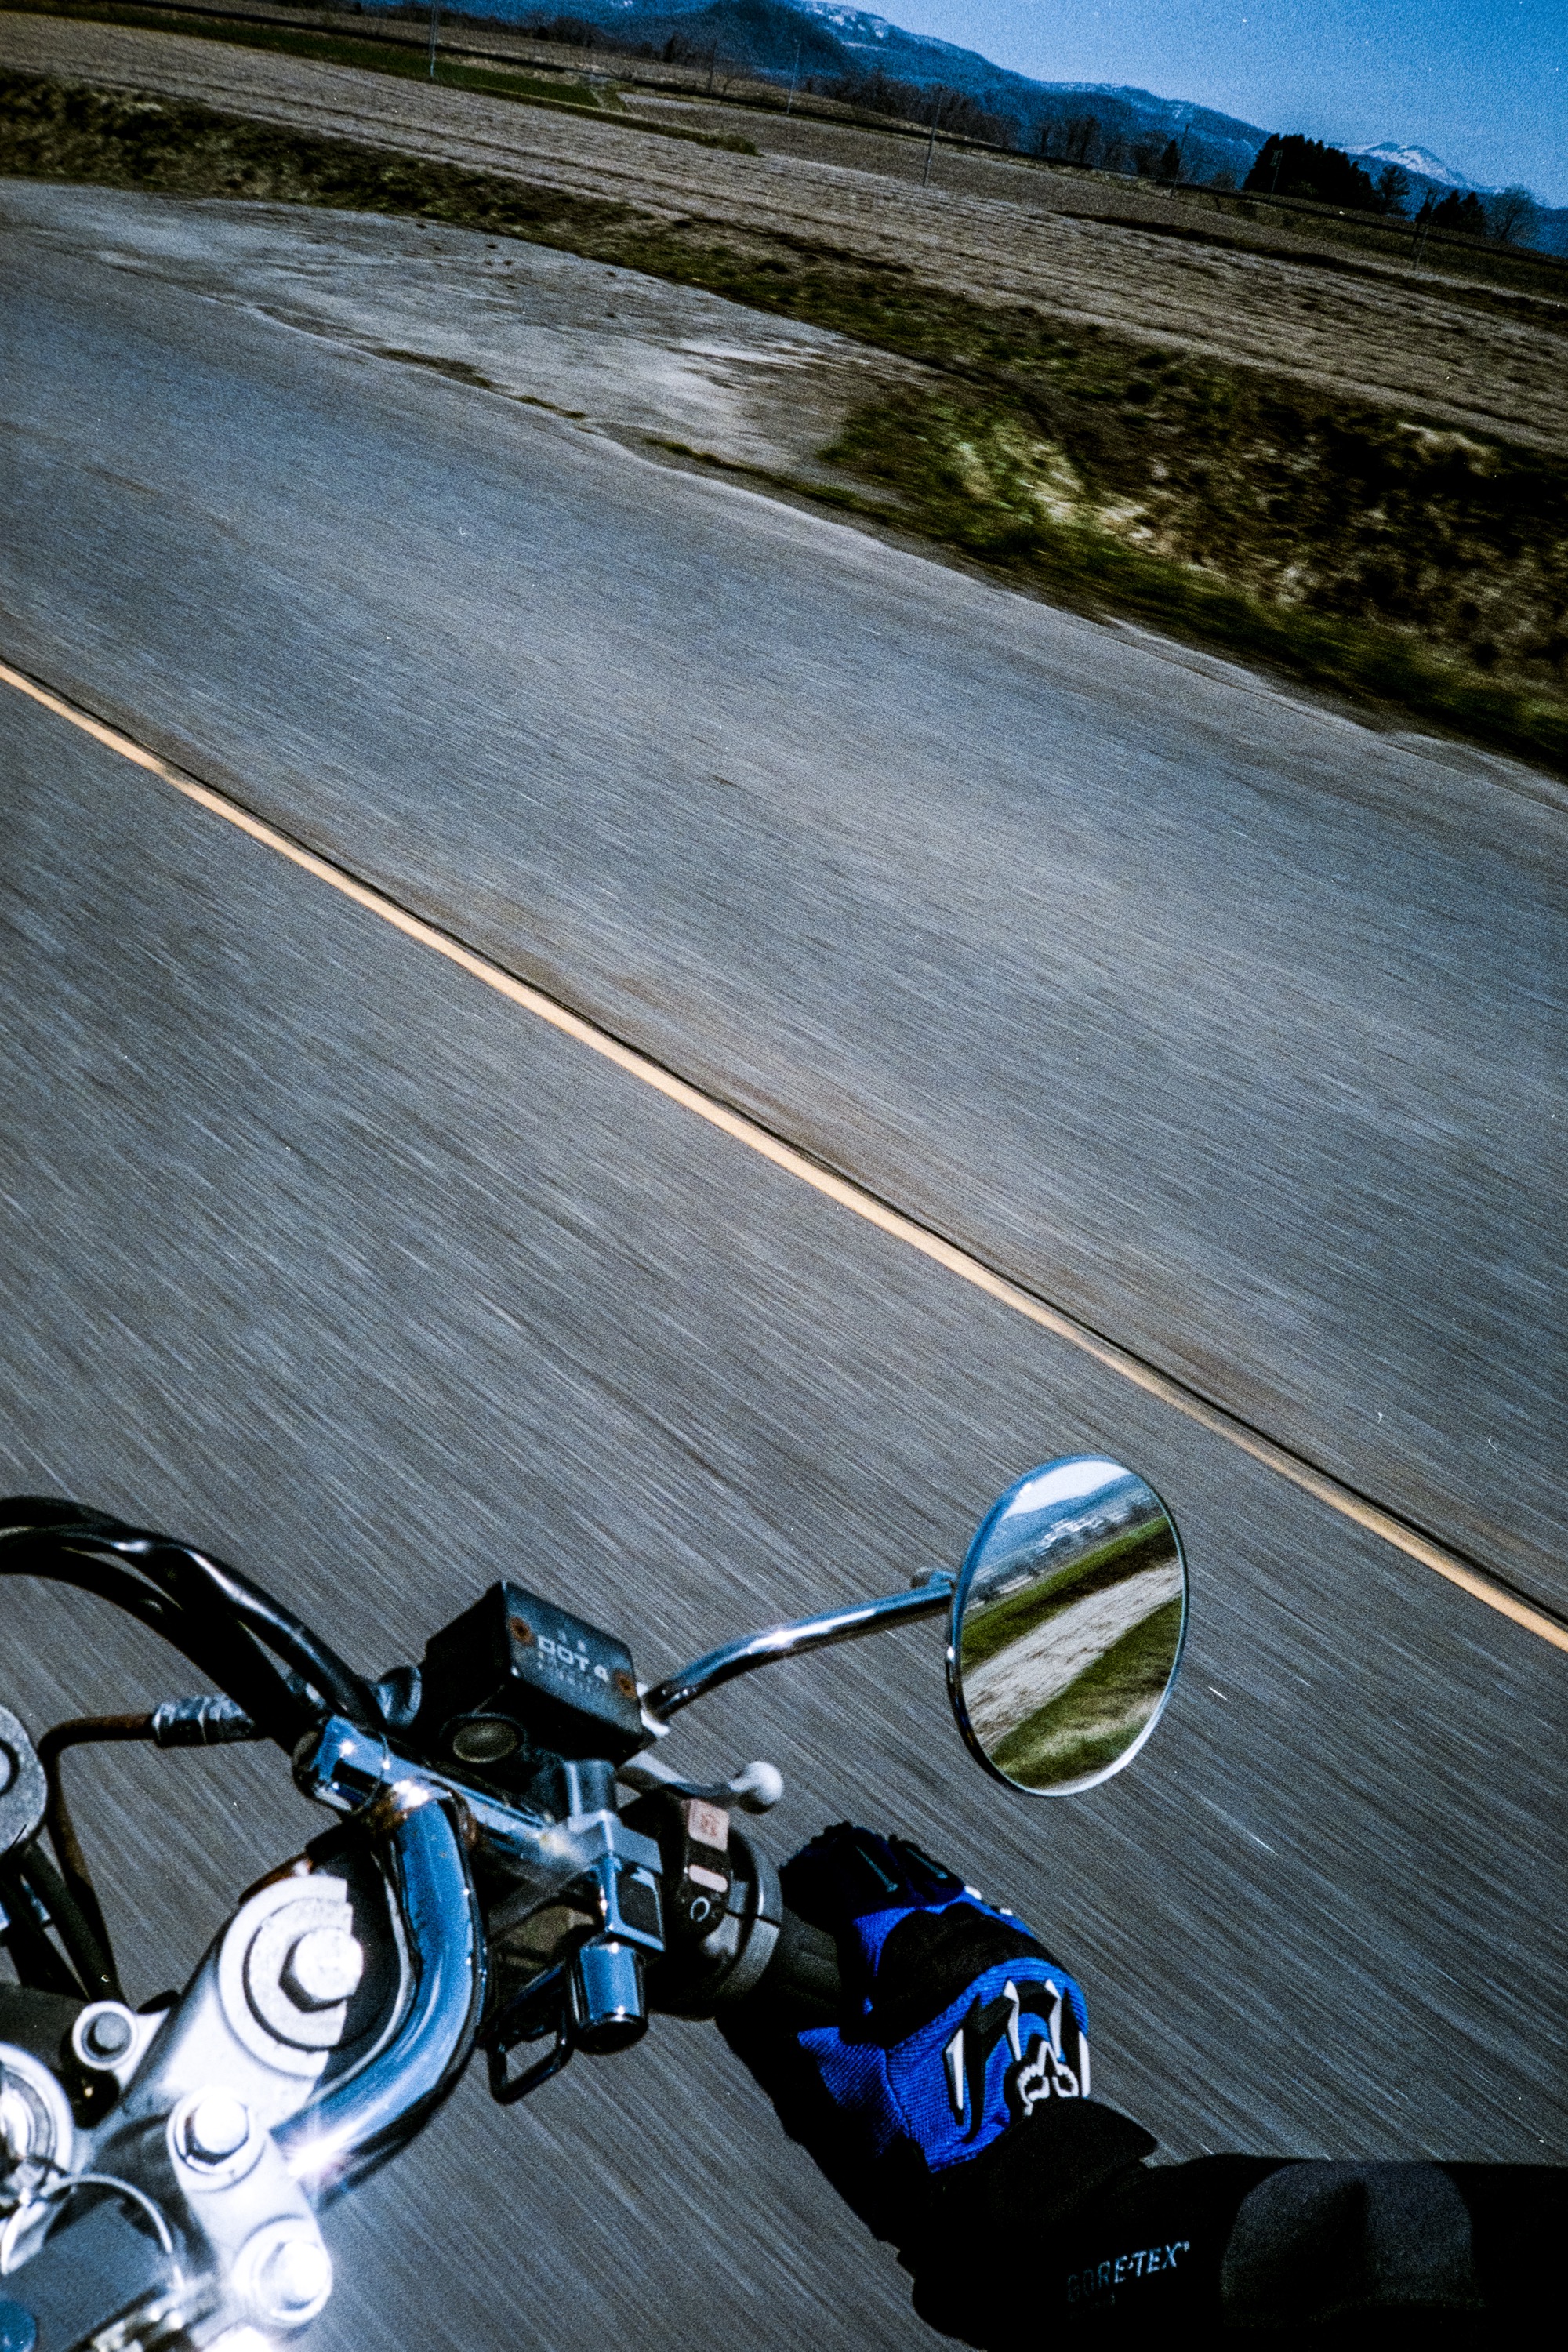 写真家・小見山峻の最新写真集が発売。バイク旅から、いま迷うことの意味を追求する